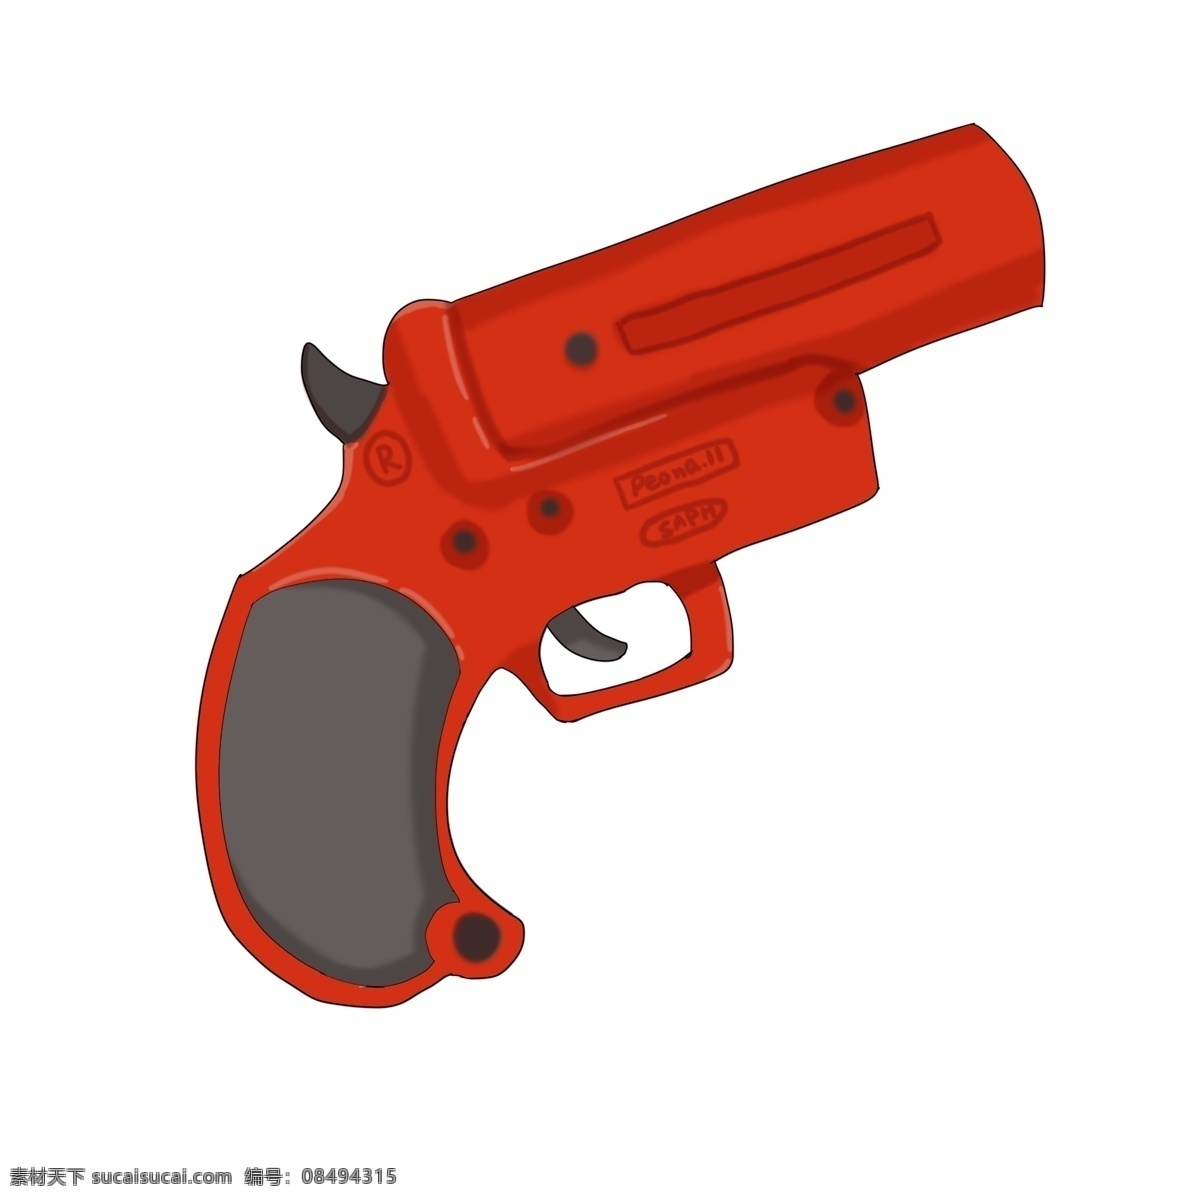 手绘 红色 信号枪 插画 军事用品 发令枪 红色信号枪 枪械 军品器材 军事器材 卡通